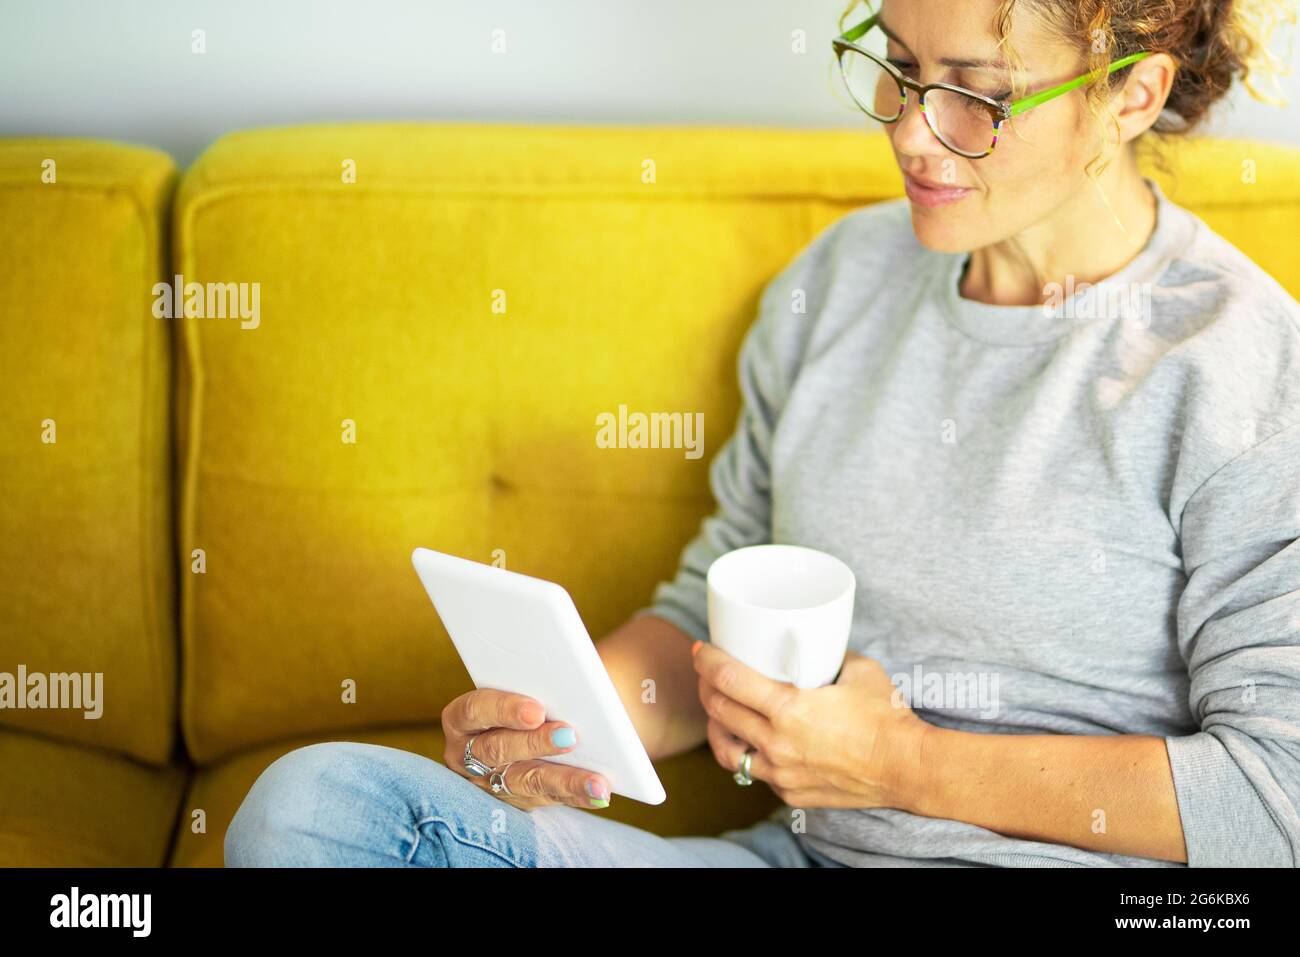 Nahaufnahme Porträt einer reifen hübschen Frau, die ein Buch auf einem Tablet liest, mit einer Brille, die zu Hause auf der gelben Couch sitzt, in der Pause Freizeit-Aktivität Stockfoto